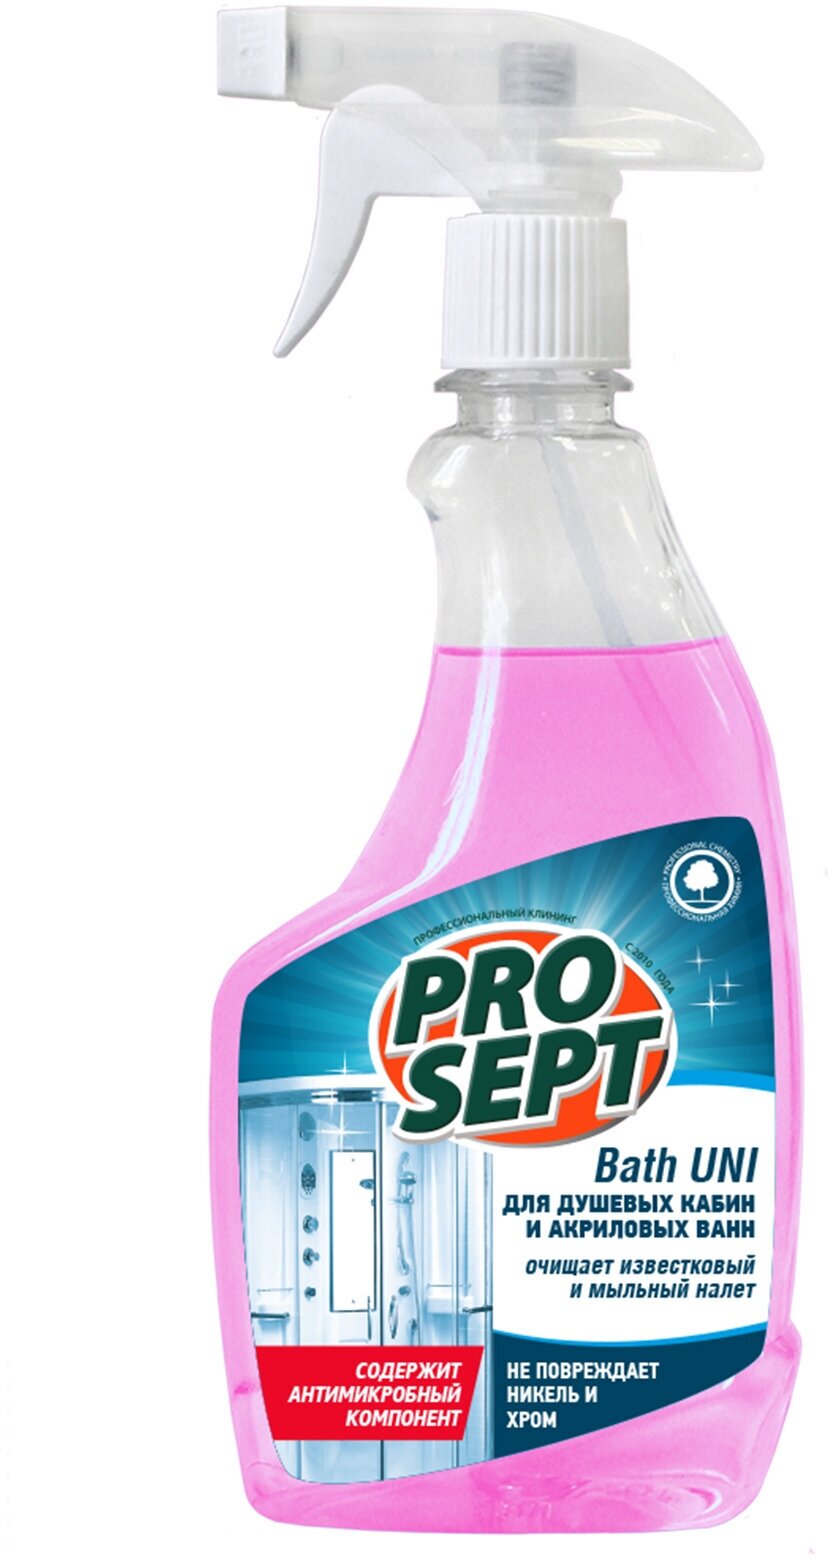 Prosept Bath Uni Универсальный концентрат для санитарных комнат с антимикробным эффектом, 500 мл